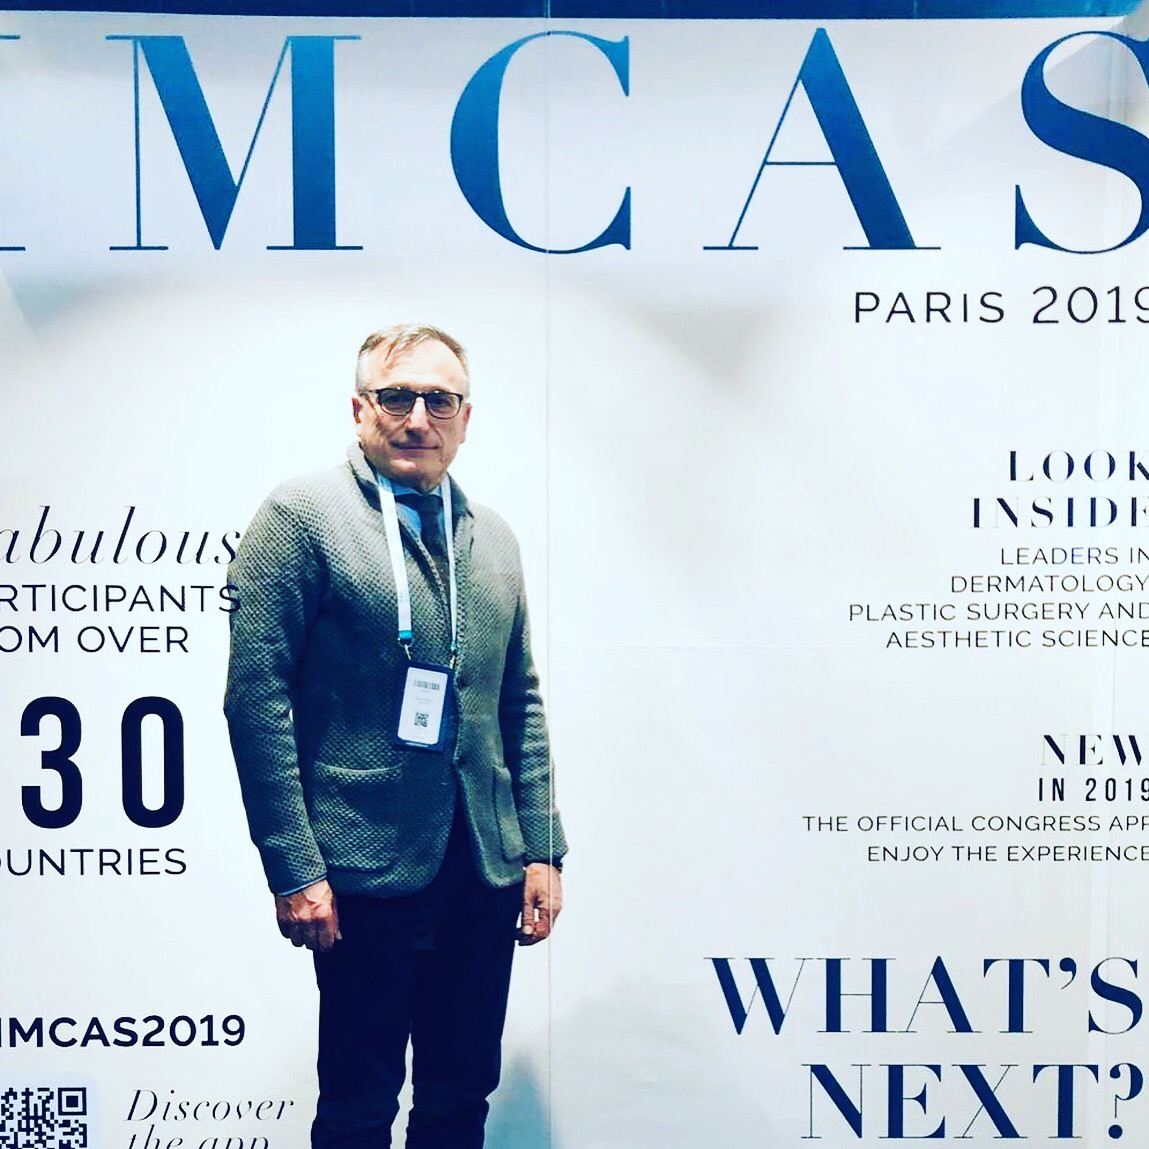 Il chirurgo estetico e plastico Cecchini al convegno IMCAS 2019